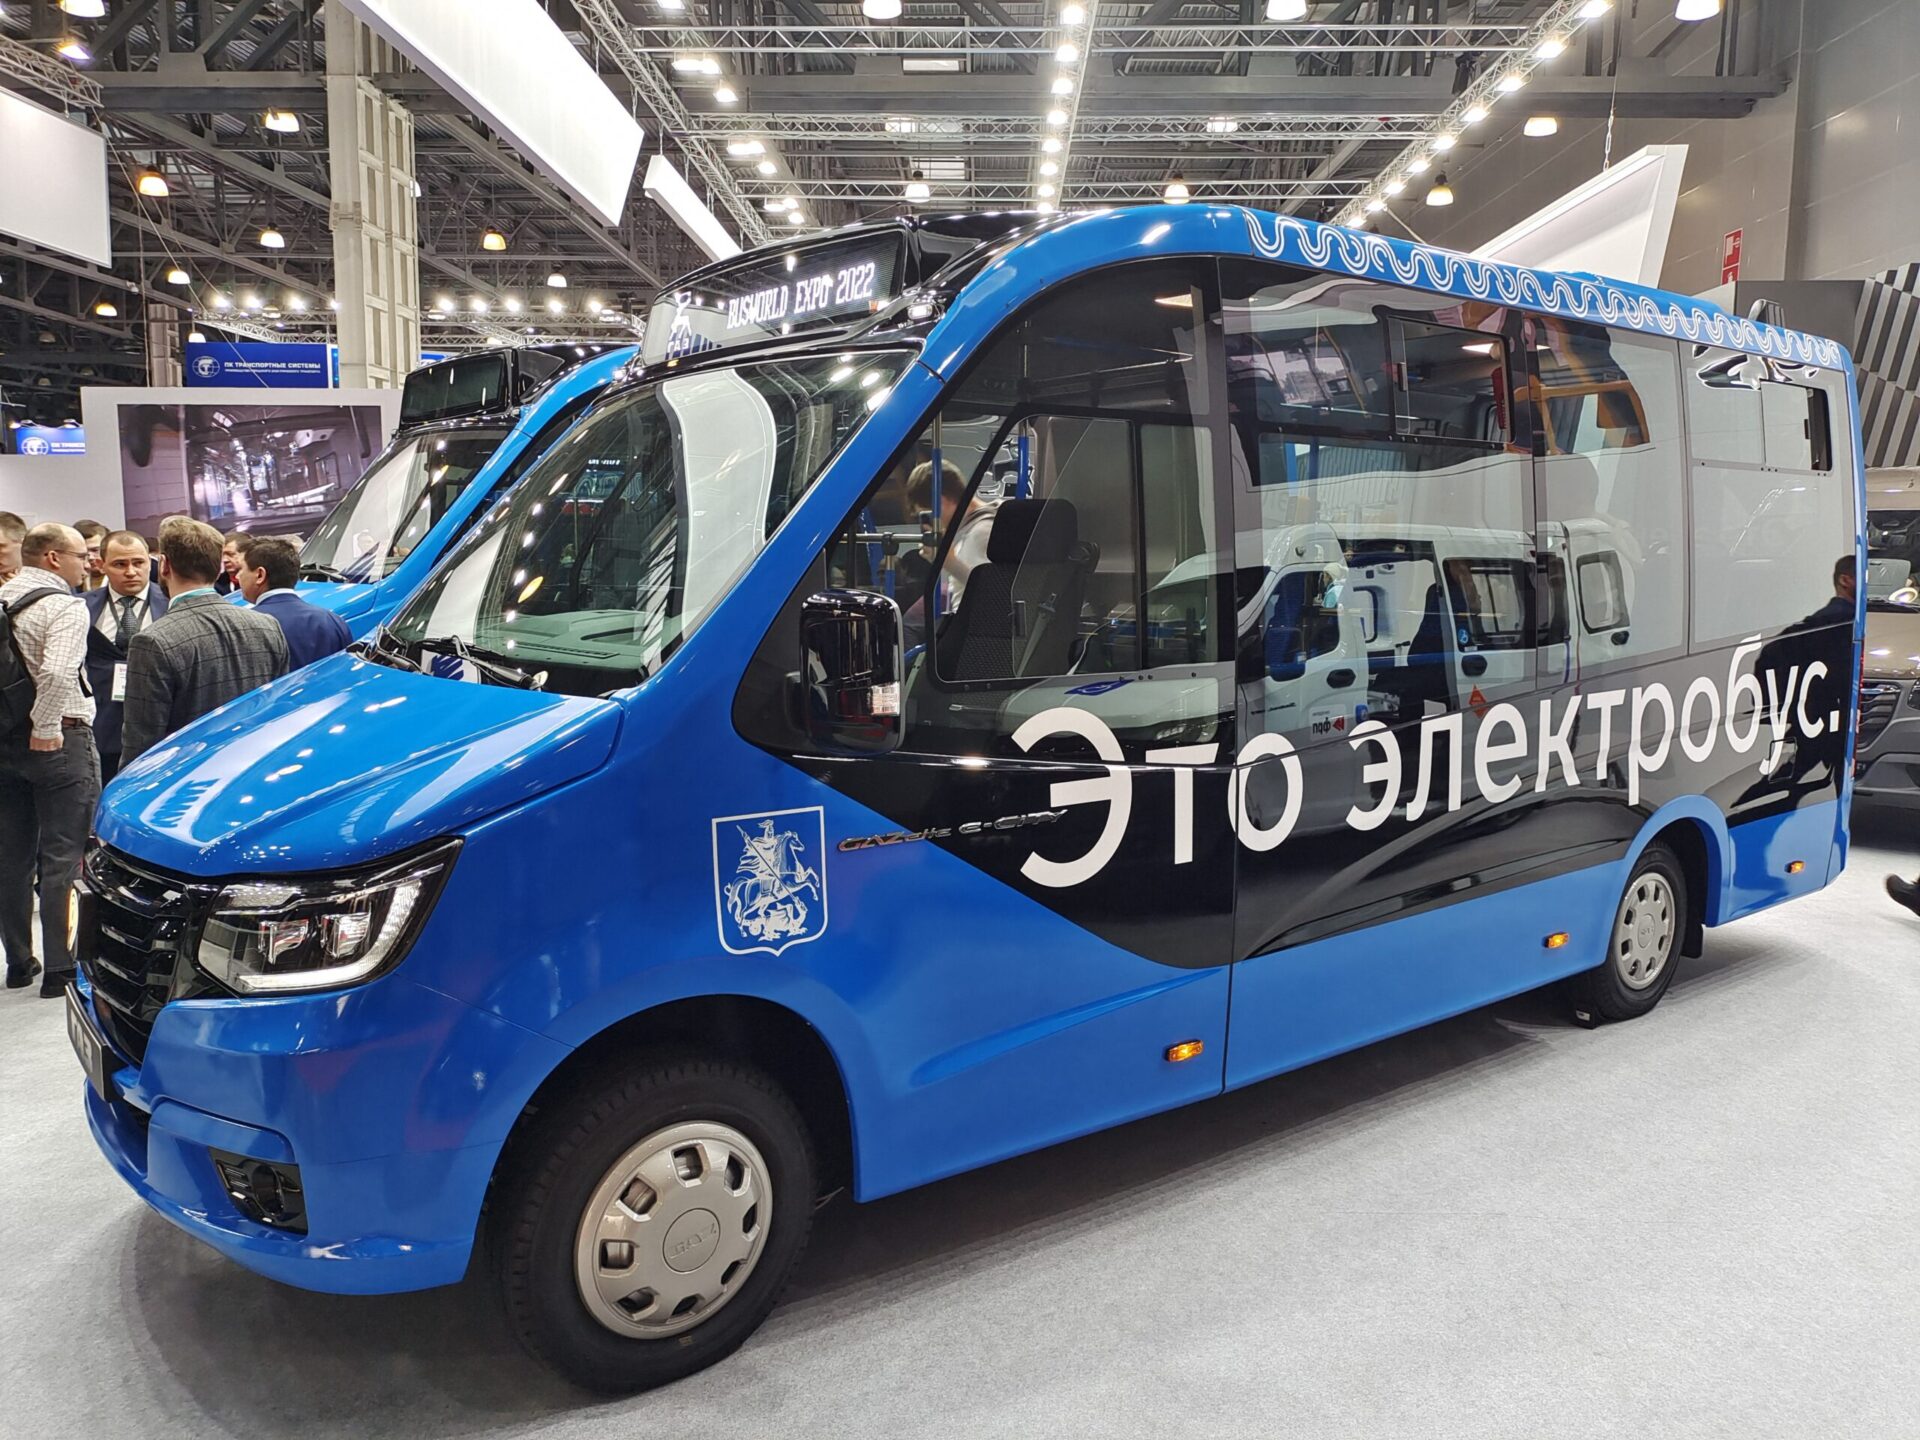 Автобус малого класса ГАЗель e-City появится в Москве